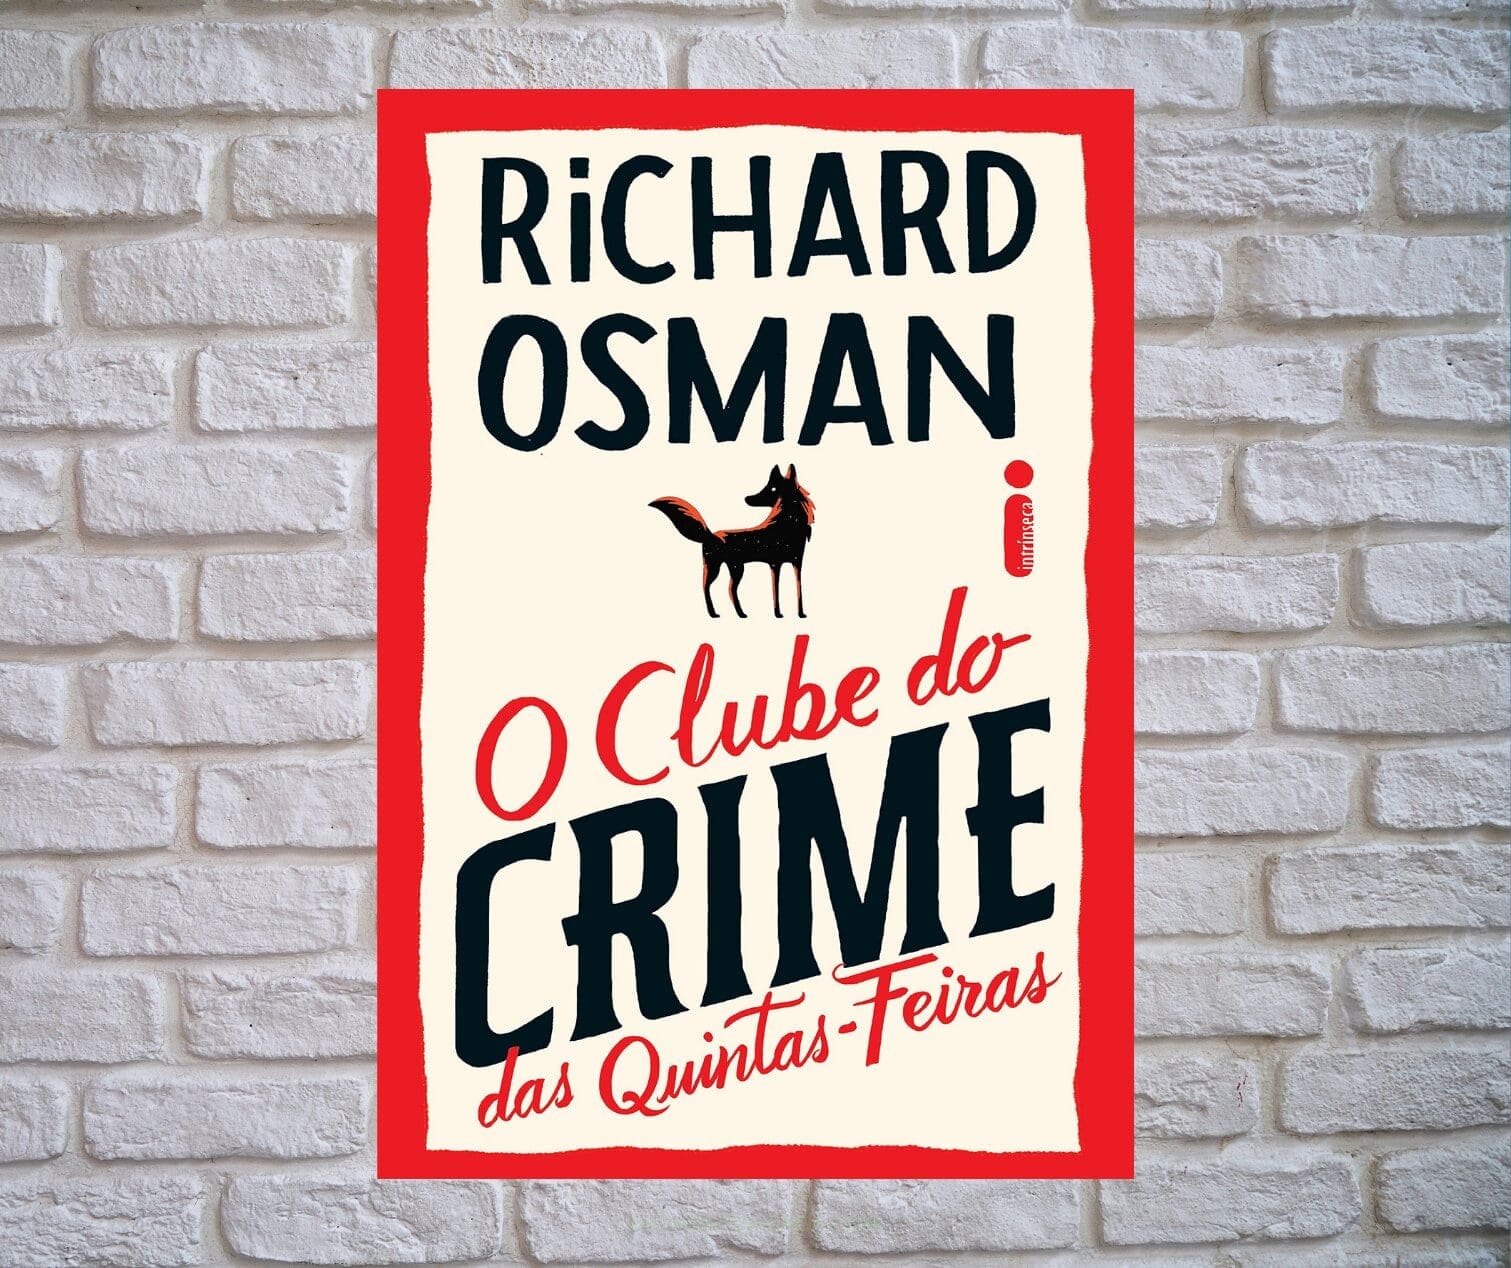 Resenha: O Clube do Crime das Quintas-Feiras, de Richard Osman